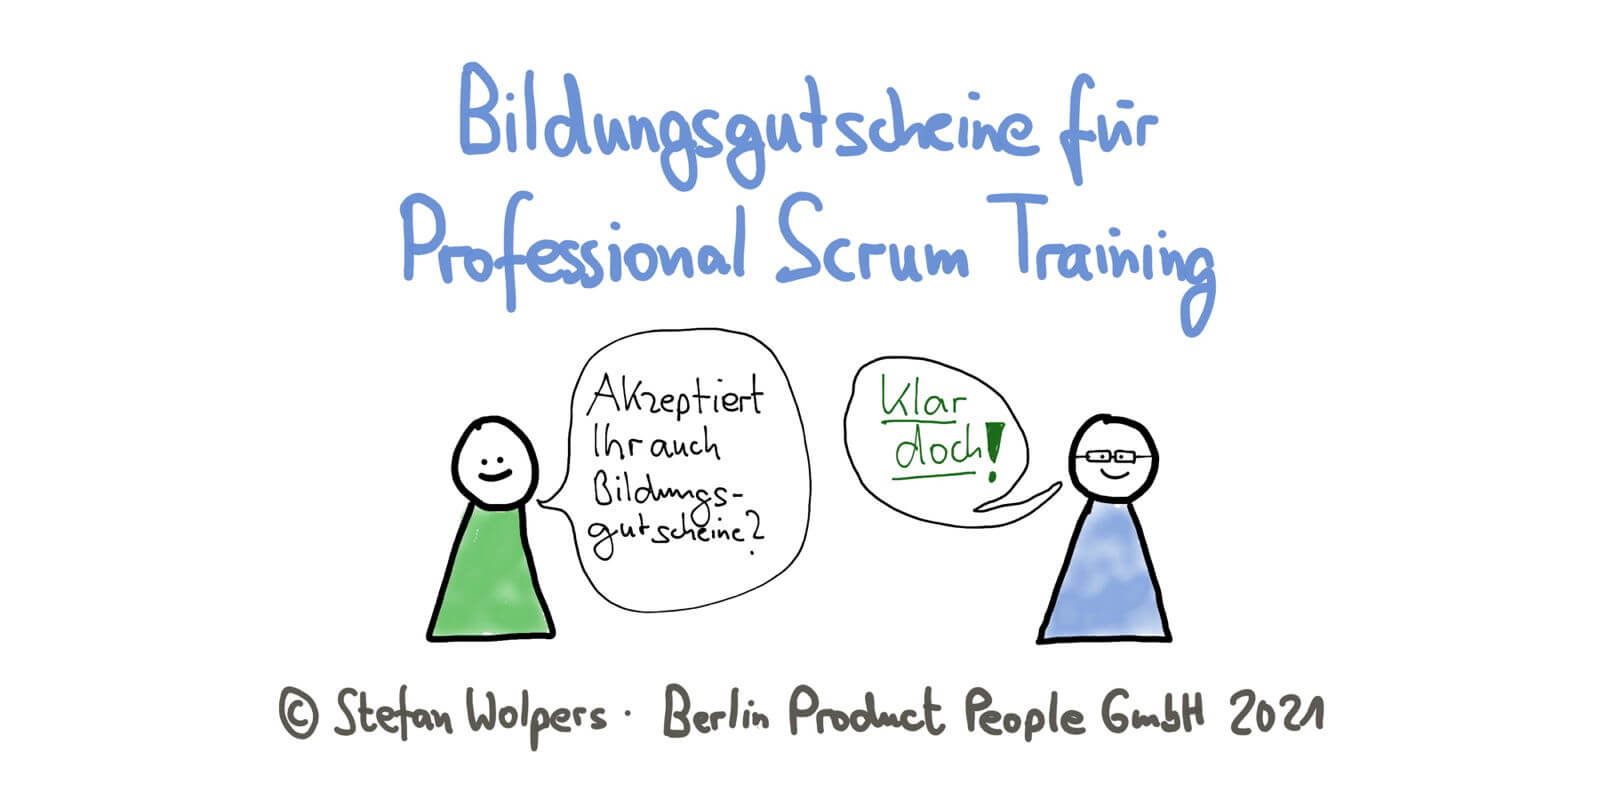 Bildungsgutschein für Professional Scrum Training — Berlin Product People GmbH